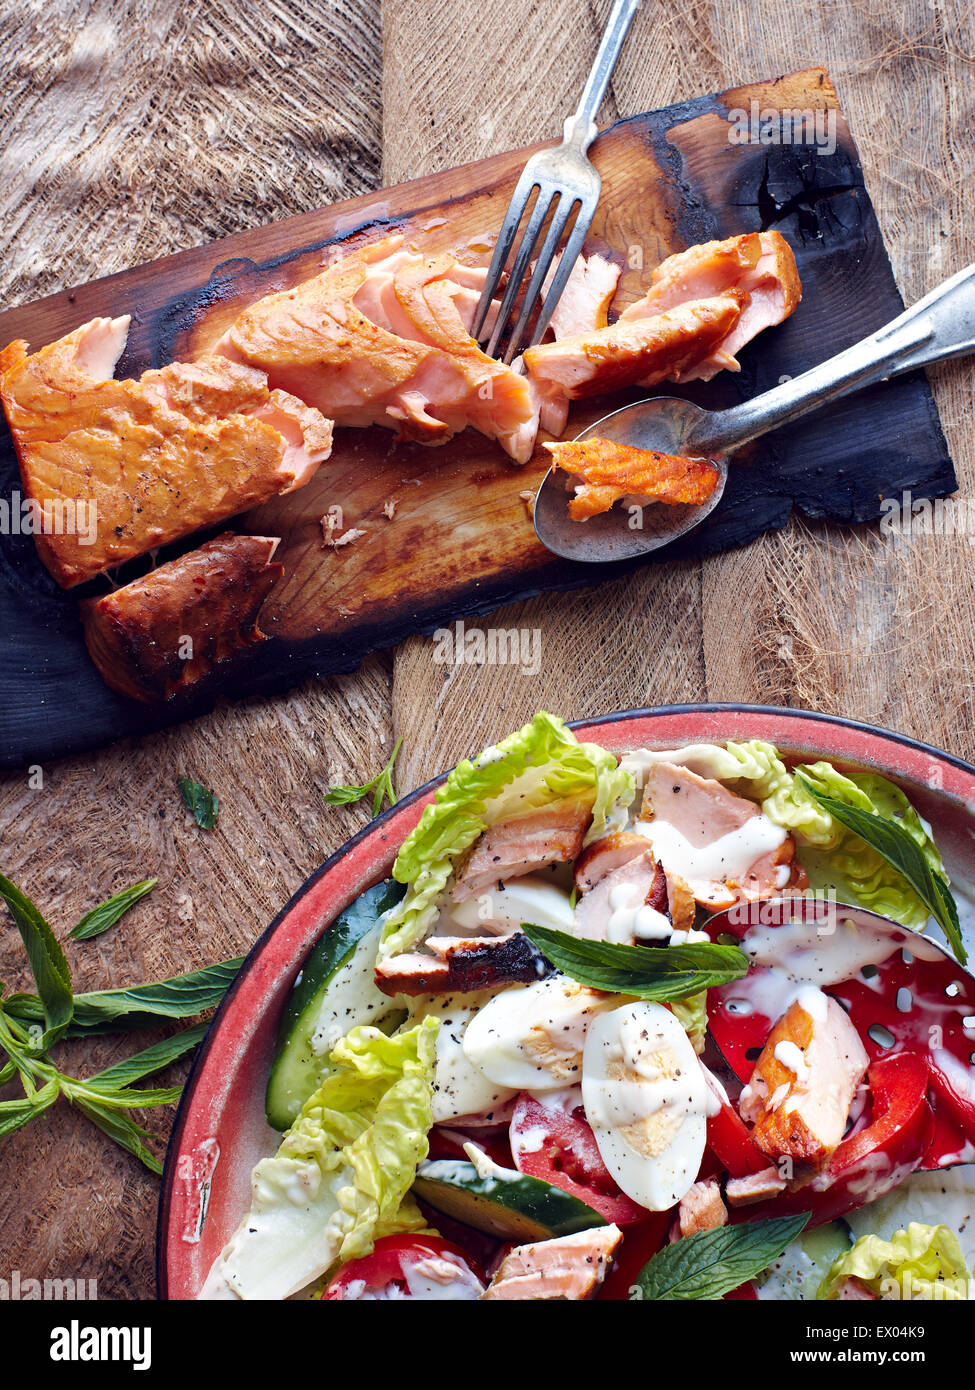 Il salmone in legno di cedro con piatto di insalata fresca Foto Stock